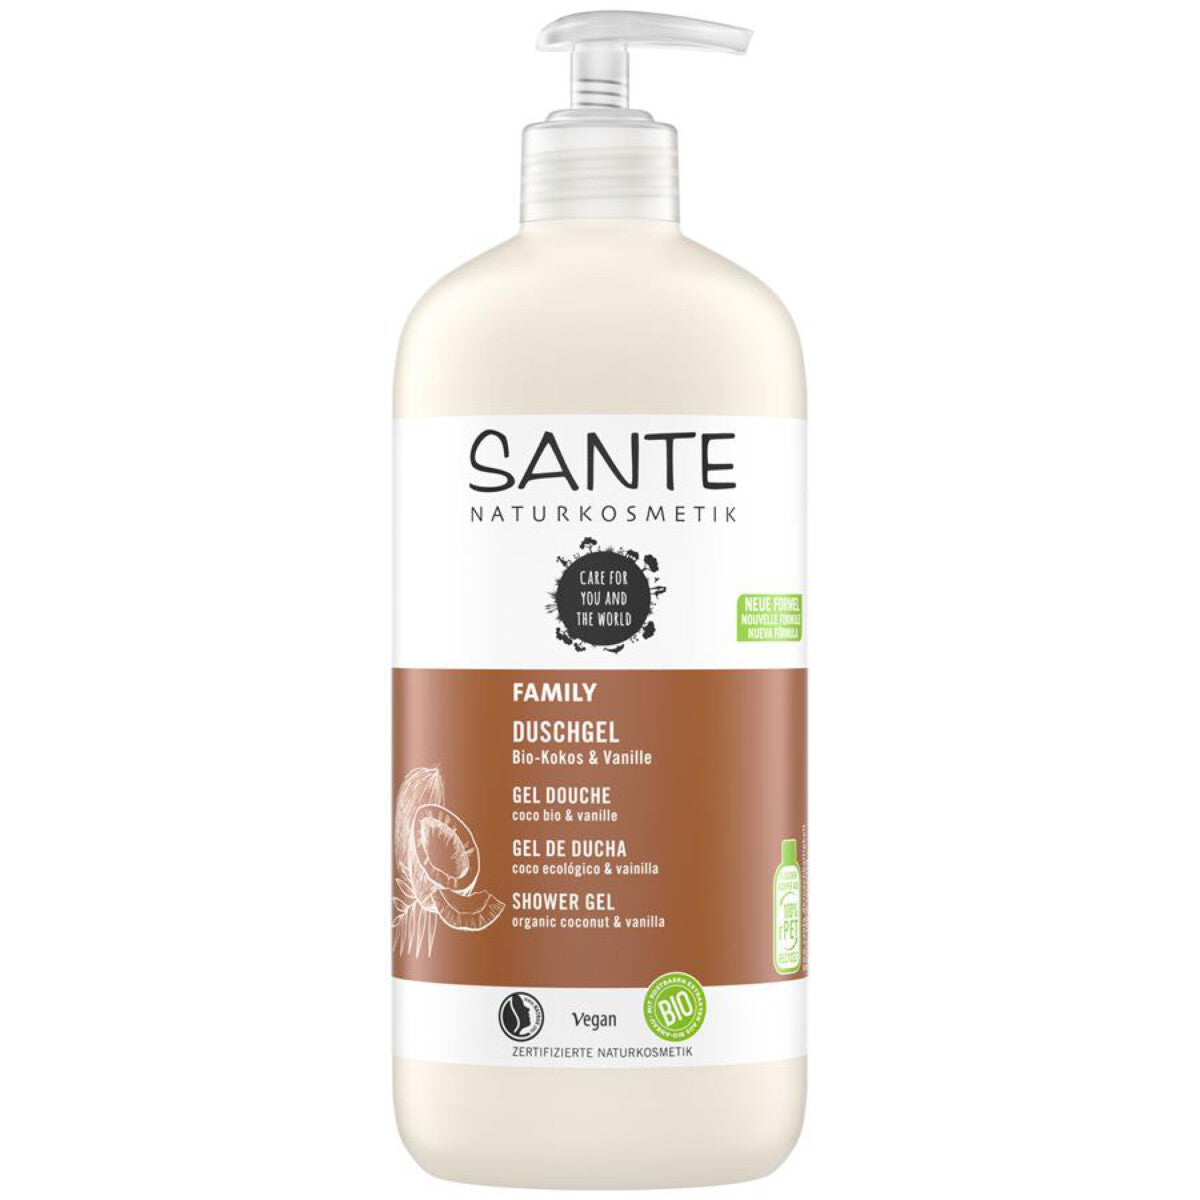 SANTE Family Duschgel Kokos & Vanille - 500 ml